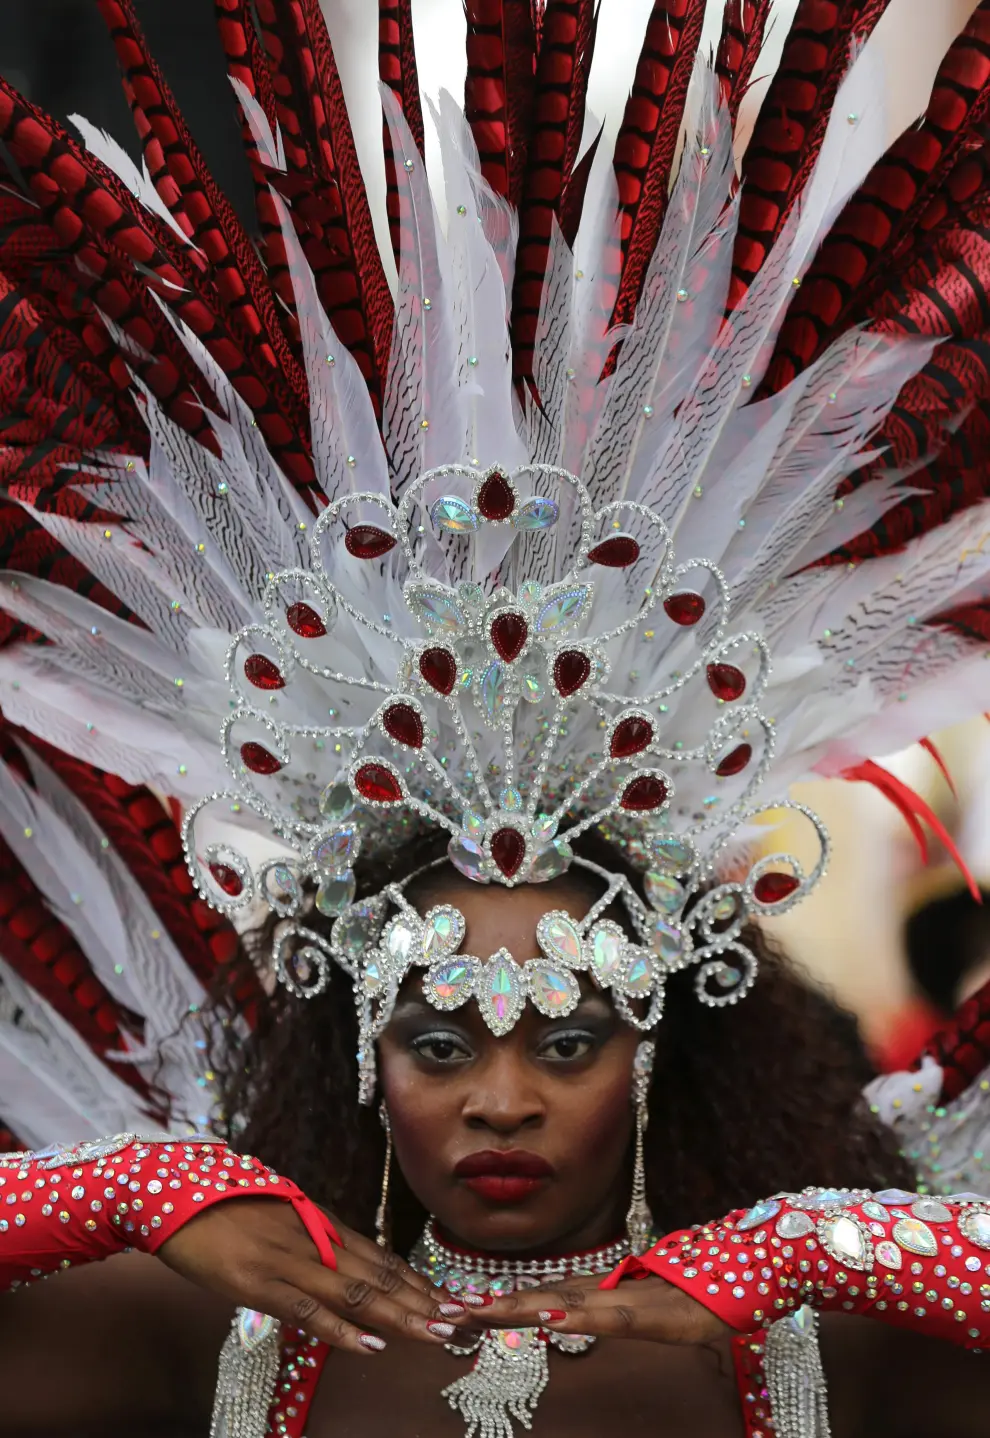 Ritmos afrocaribeños toman Notting Hill durante el gran desfile del carnaval